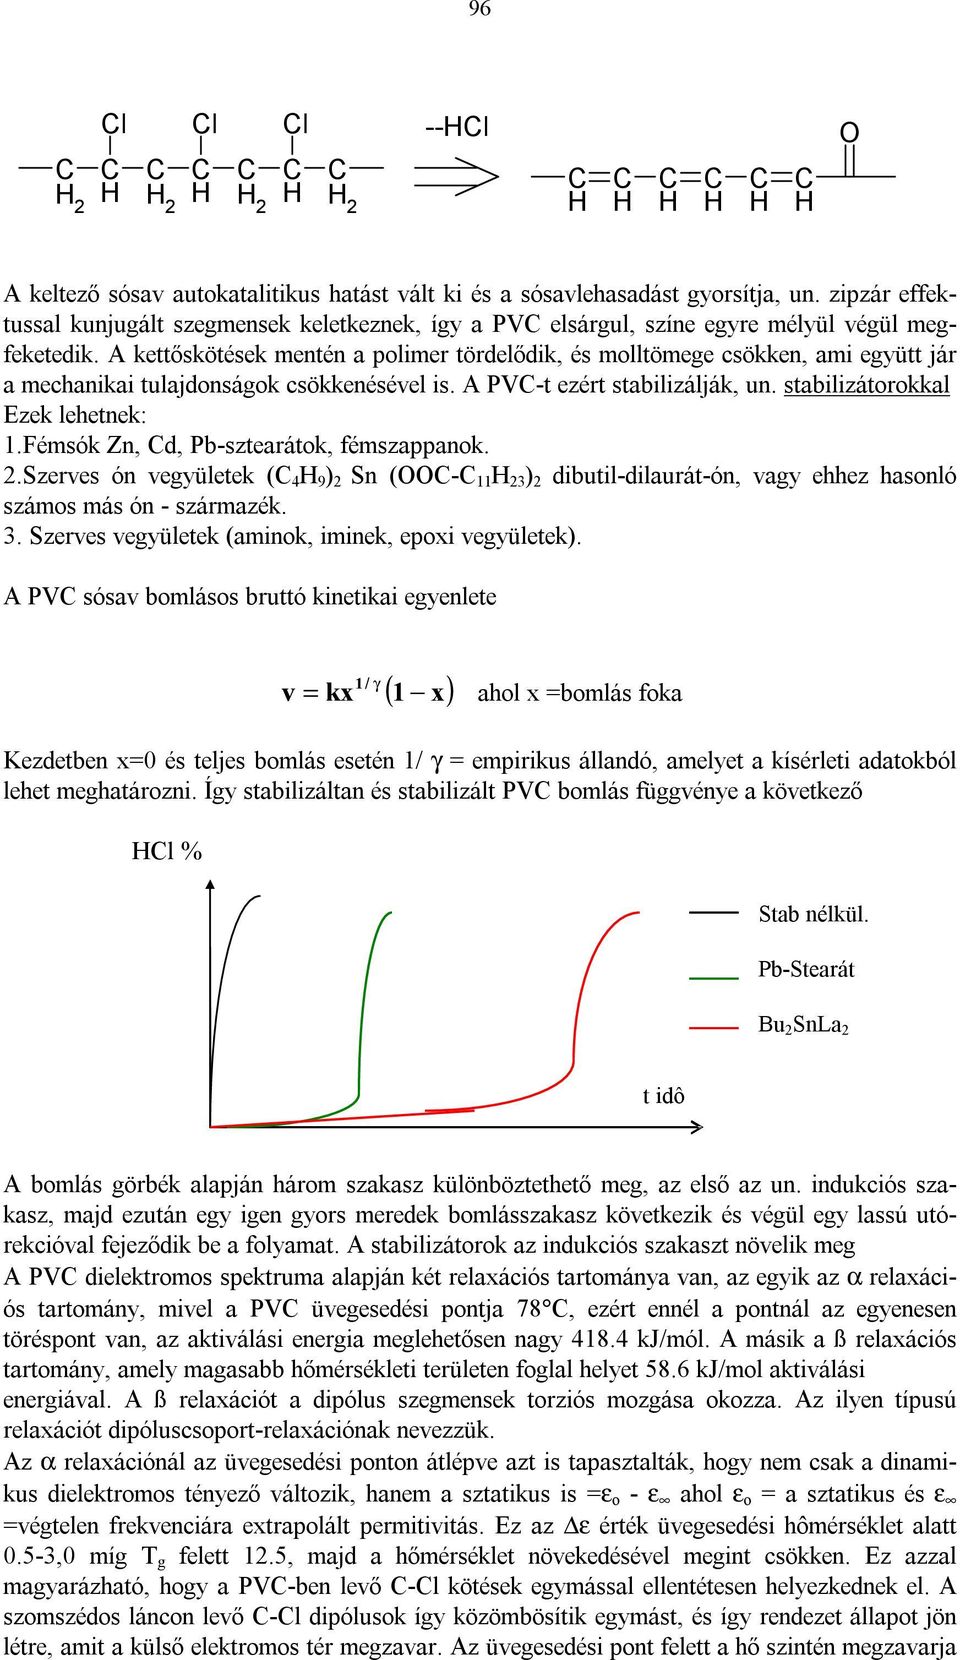 Szerves szintetikus polimerek (műanyagok). - PDF Free Download